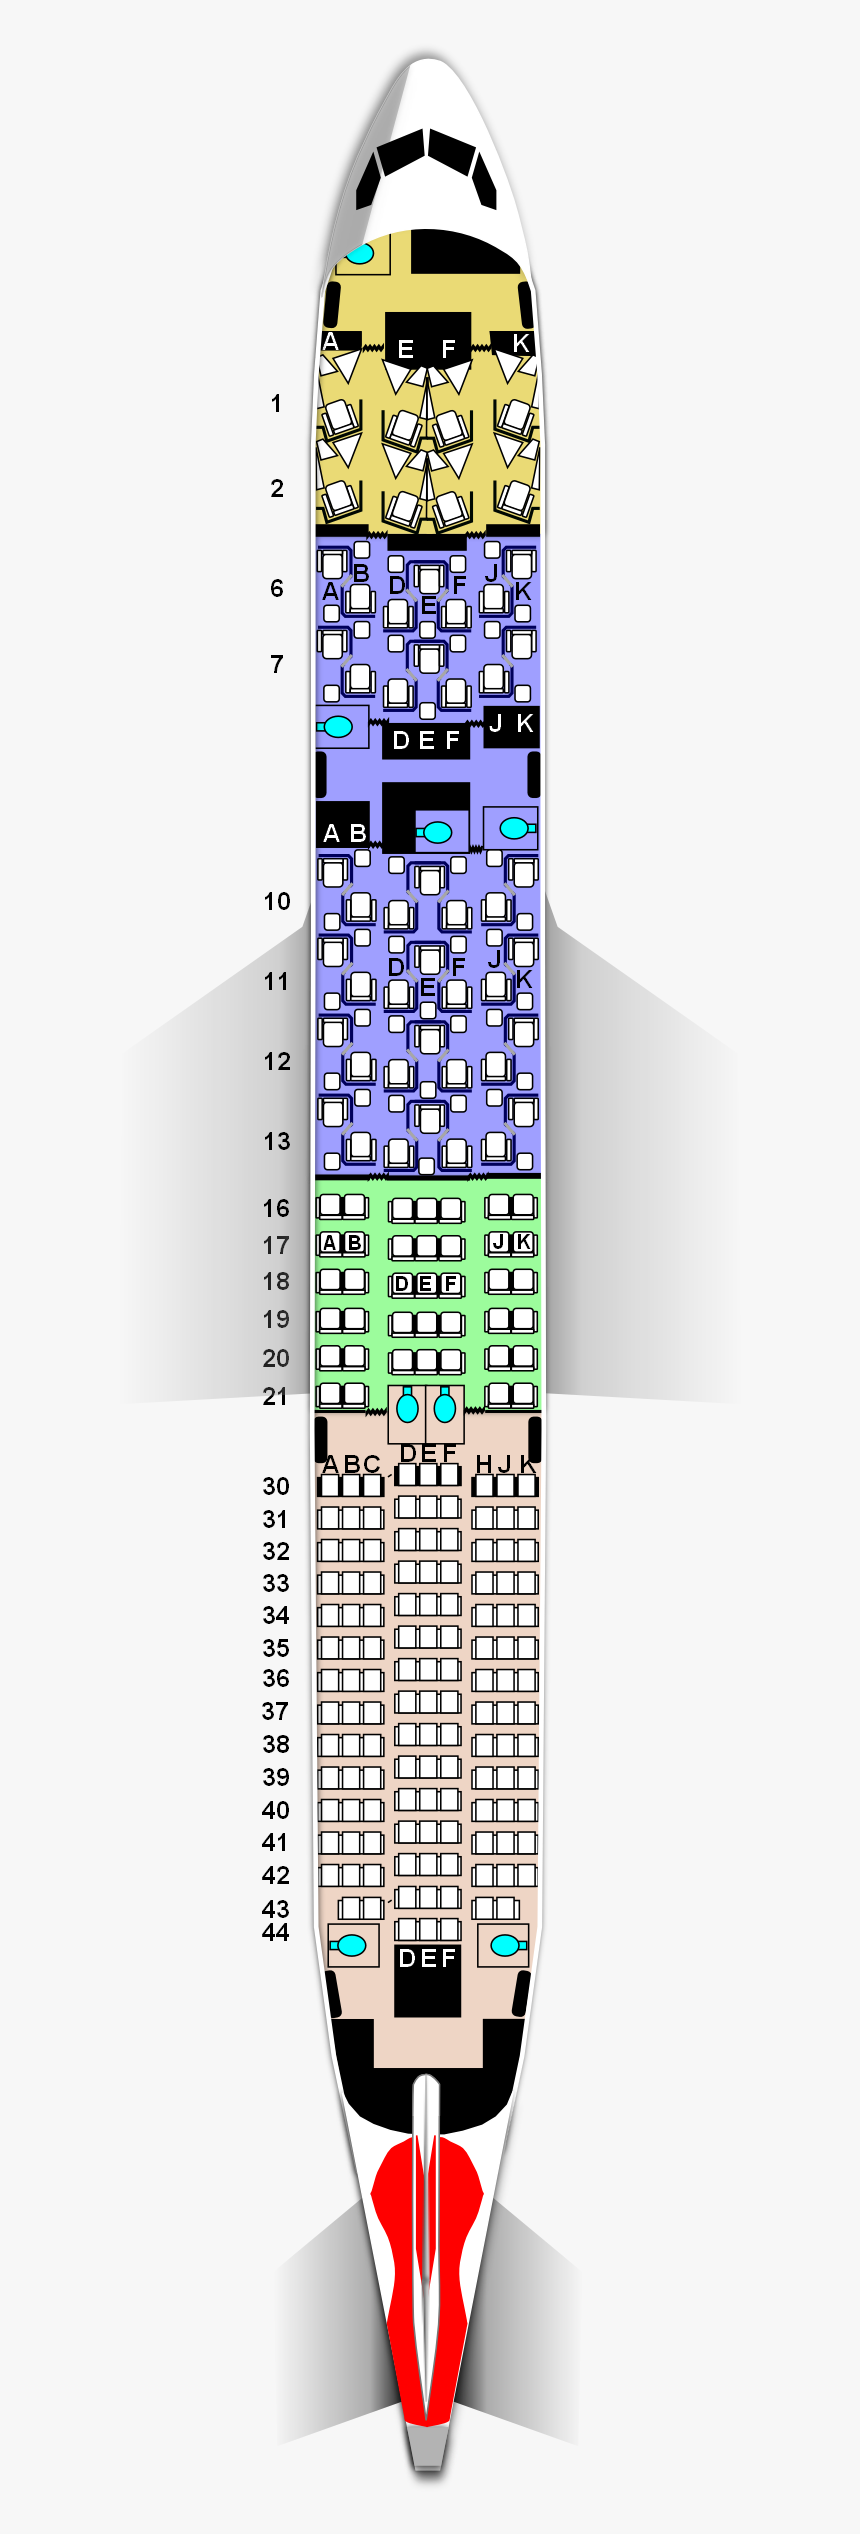 467 4677056 Boeing 787 9 British Airways Seat Map Hd 